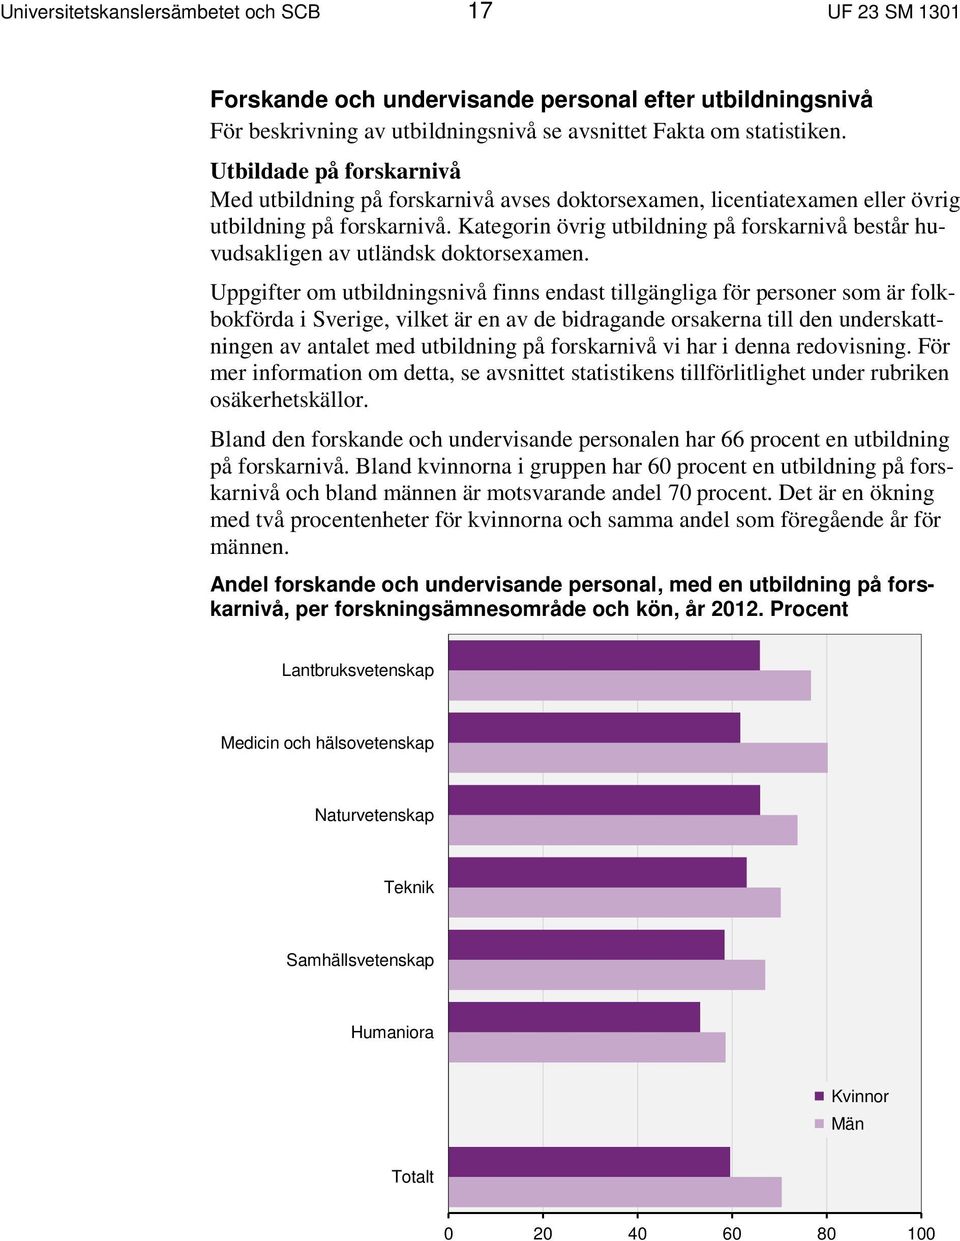 Uppgifter om utbildningsnivå finns endast tillgängliga för personer som är folkbokförda i Sverige, vilket är en av de bidragande orsakerna till den underskattningen av antalet med utbildning på